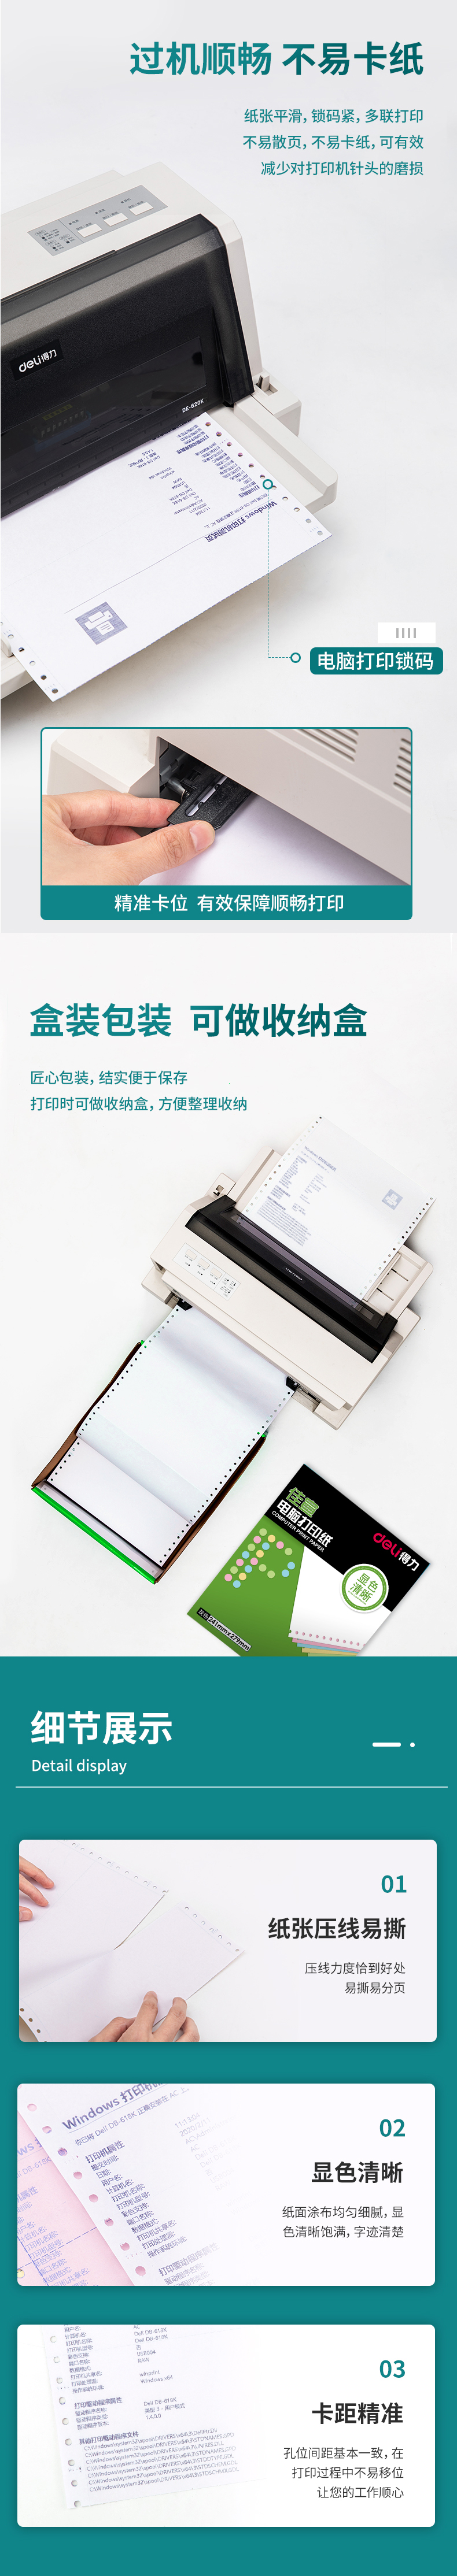 得力佳宣J241-4电脑打印纸(C彩色不撕边)(盒)_04.jpg